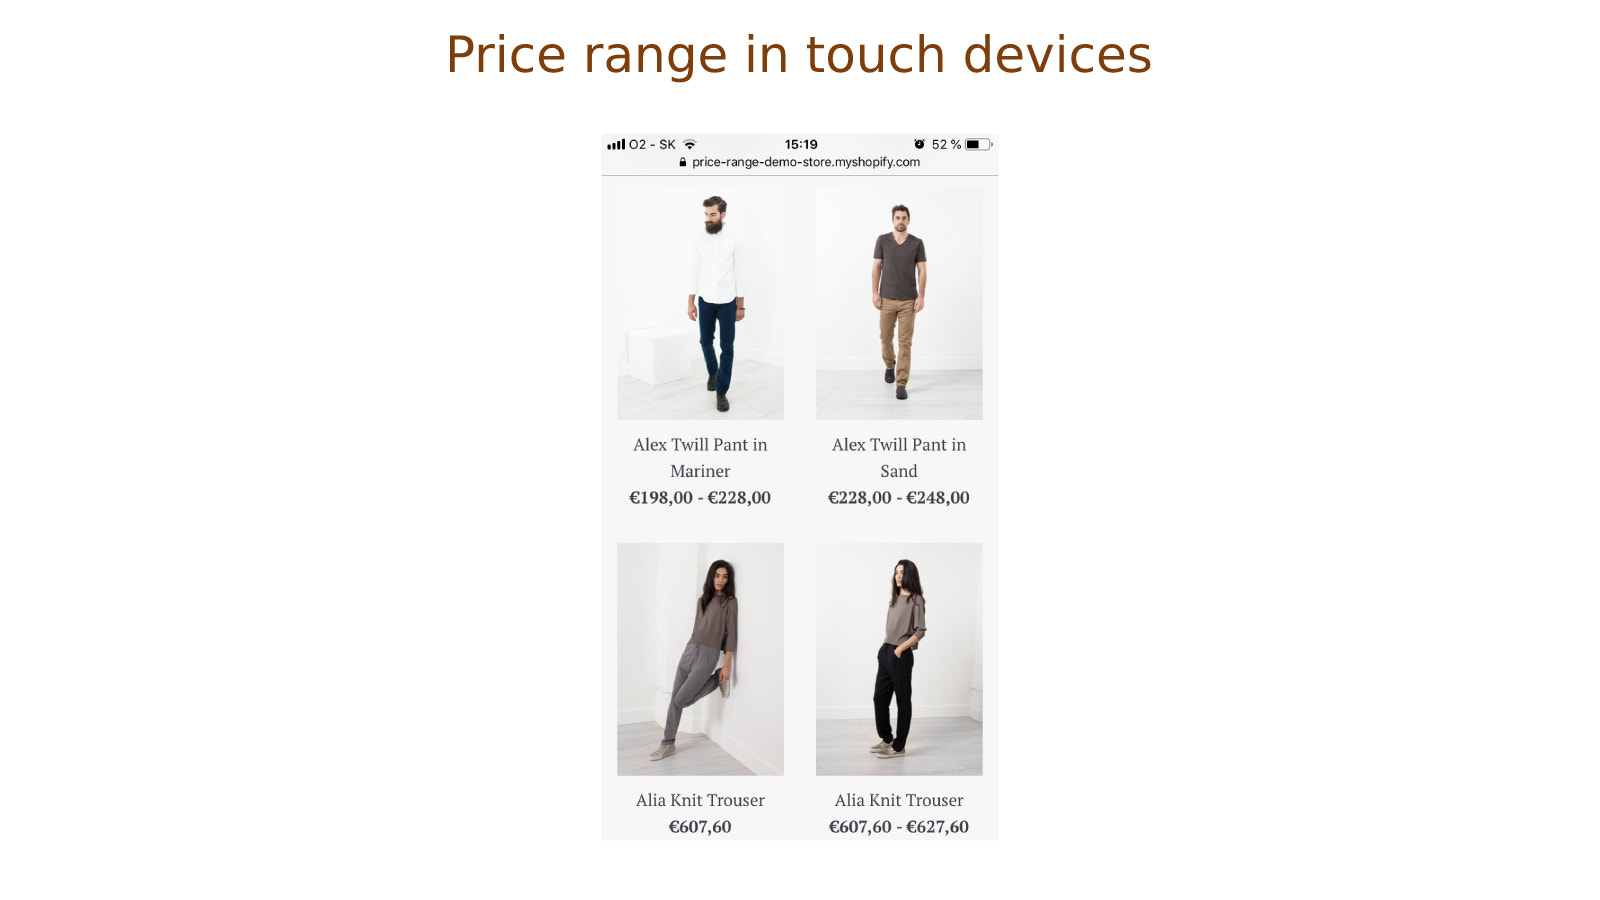 Faixas de preço para produtos em dispositivos touch